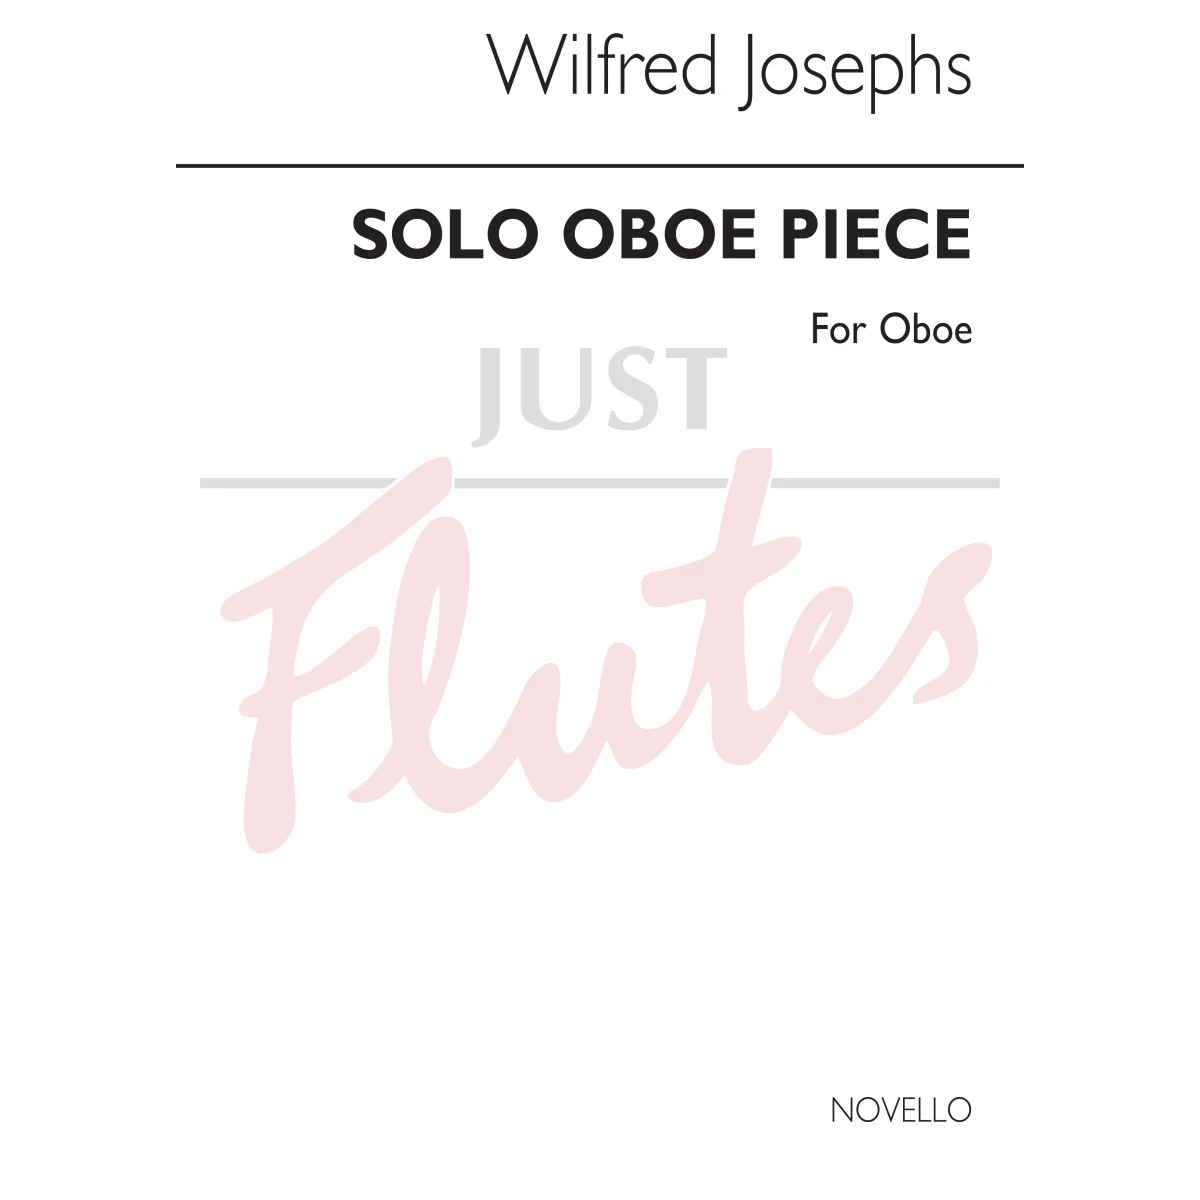 Solo Oboe Piece